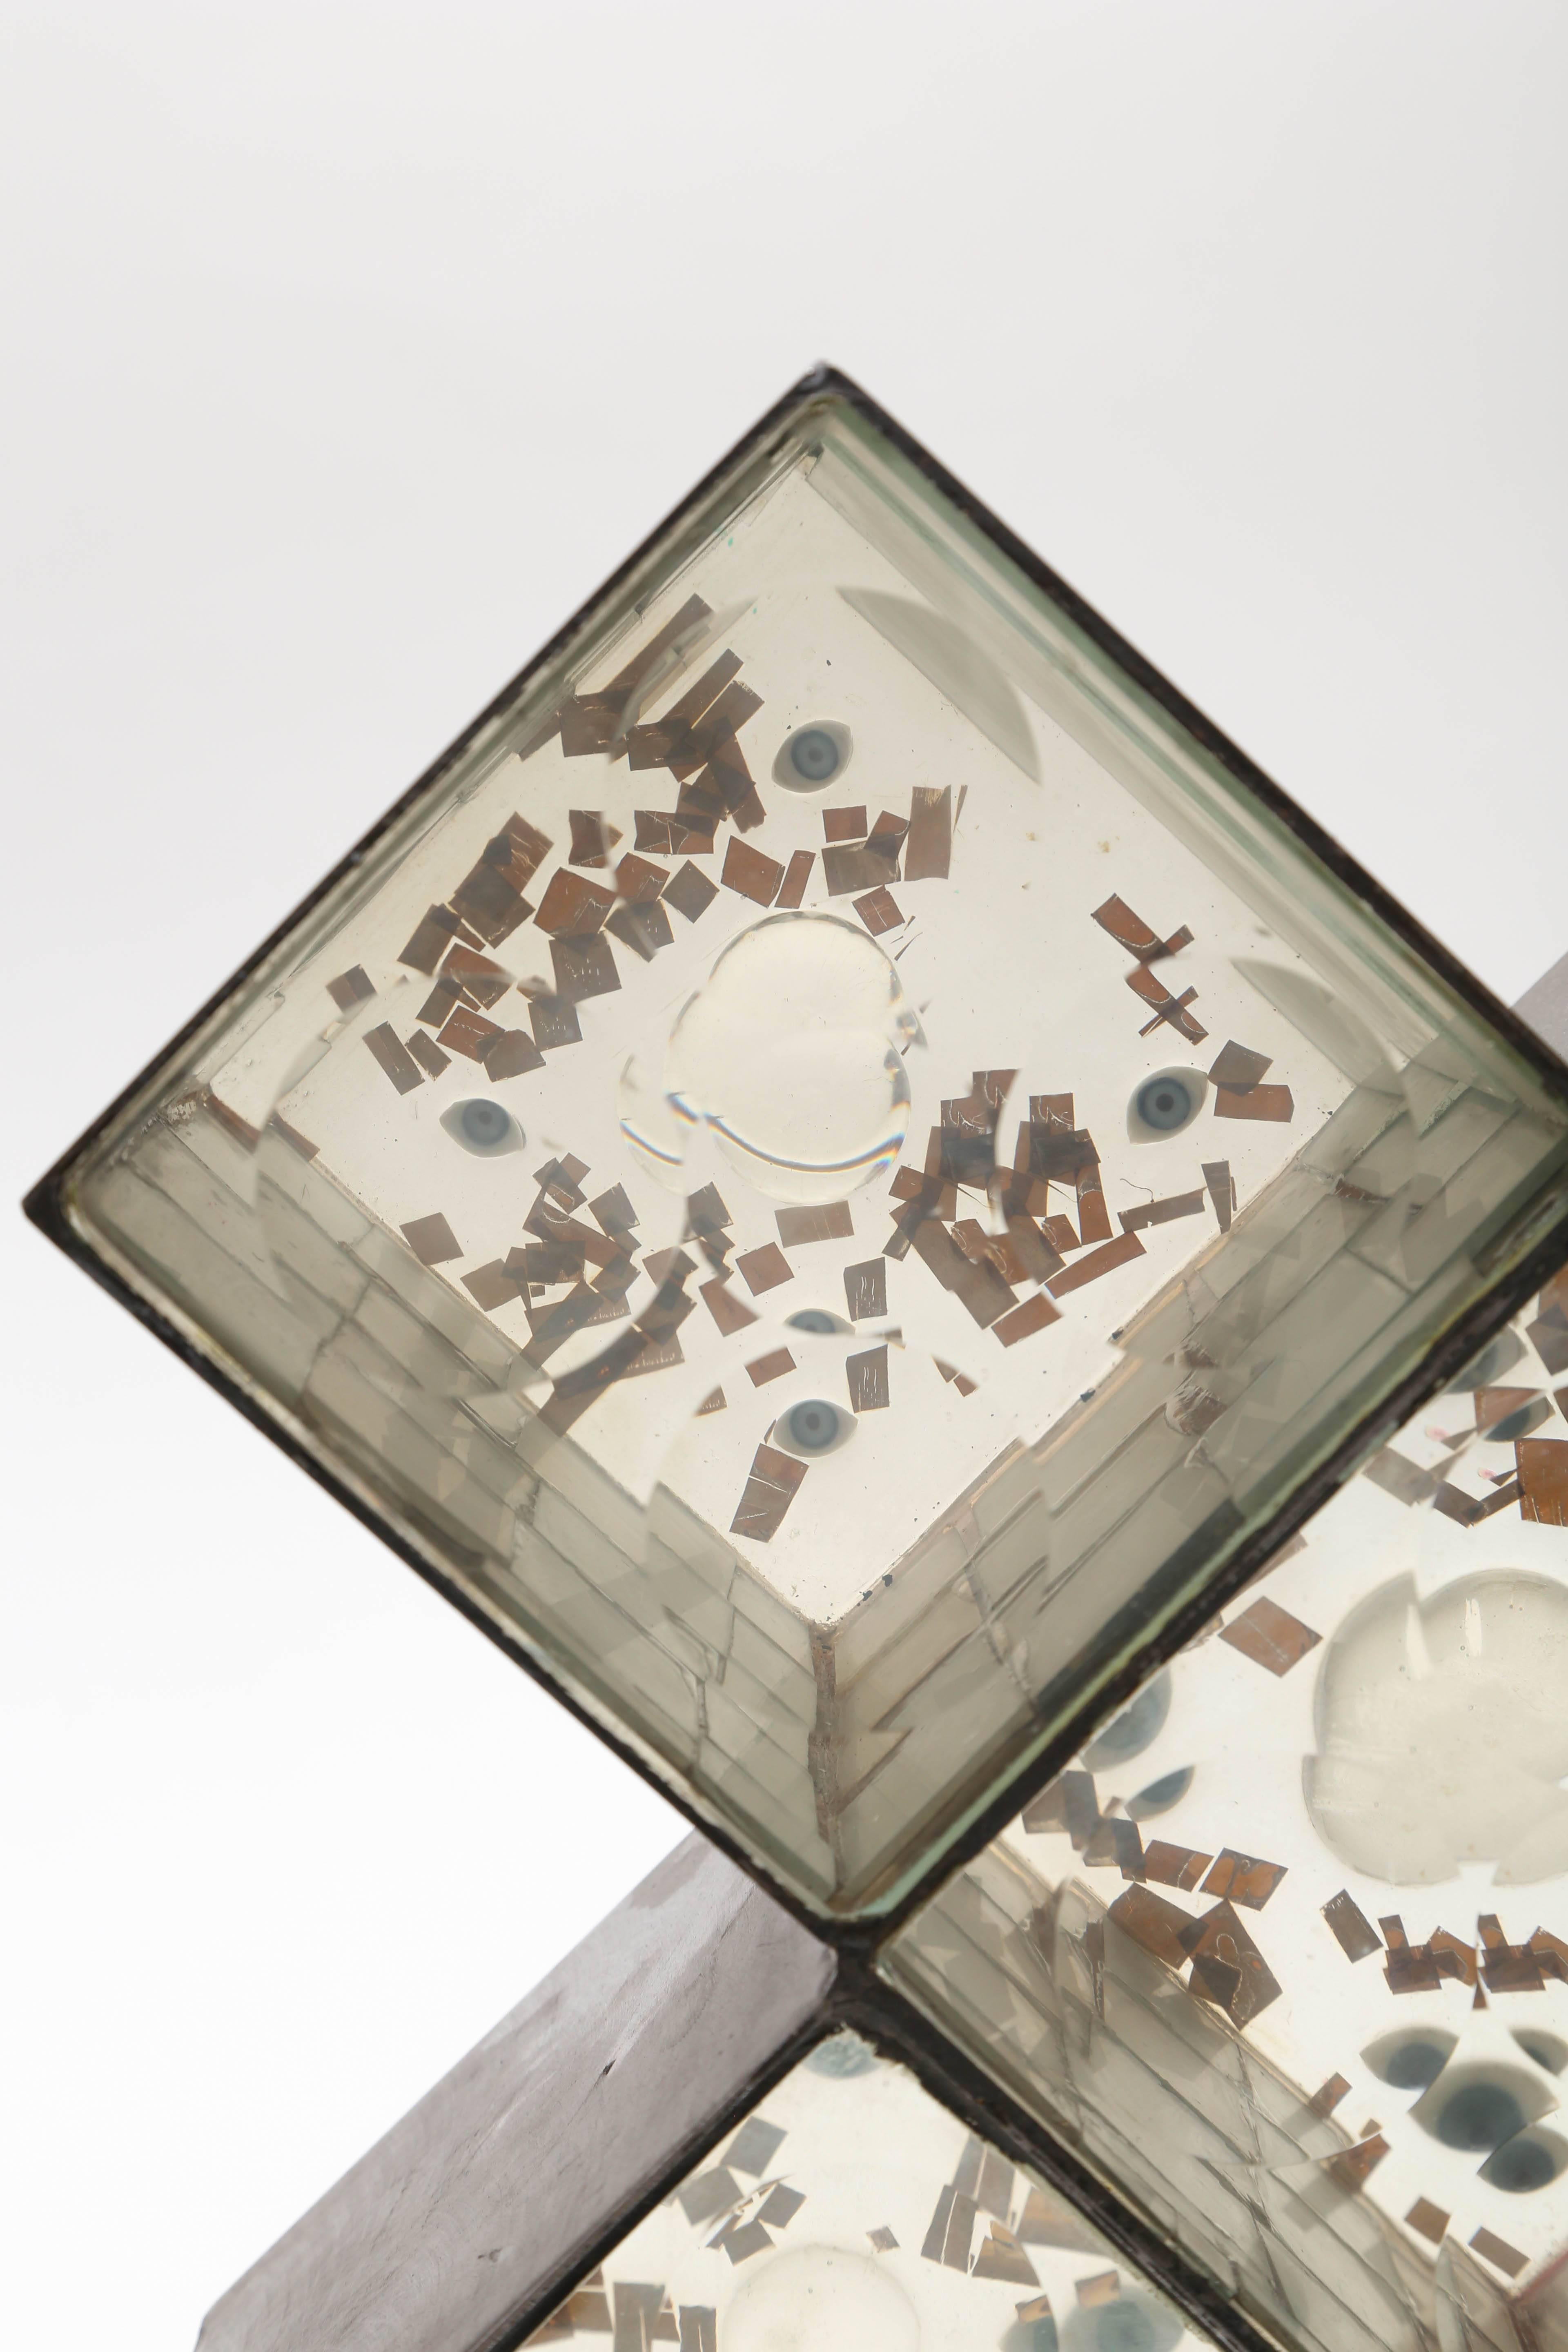 Ein frühes Exemplar dieser Serie, signiert vom Künstler im Jahr 1968.
Eine Ansammlung von Stahl, poliertem Glas, Kupferkonfetti, Spiegeln und Glaskugeln.
Feliciano Bejar fand seine Inspiration für Magiscopios in der Reflexion der Sonne in Pfützen.